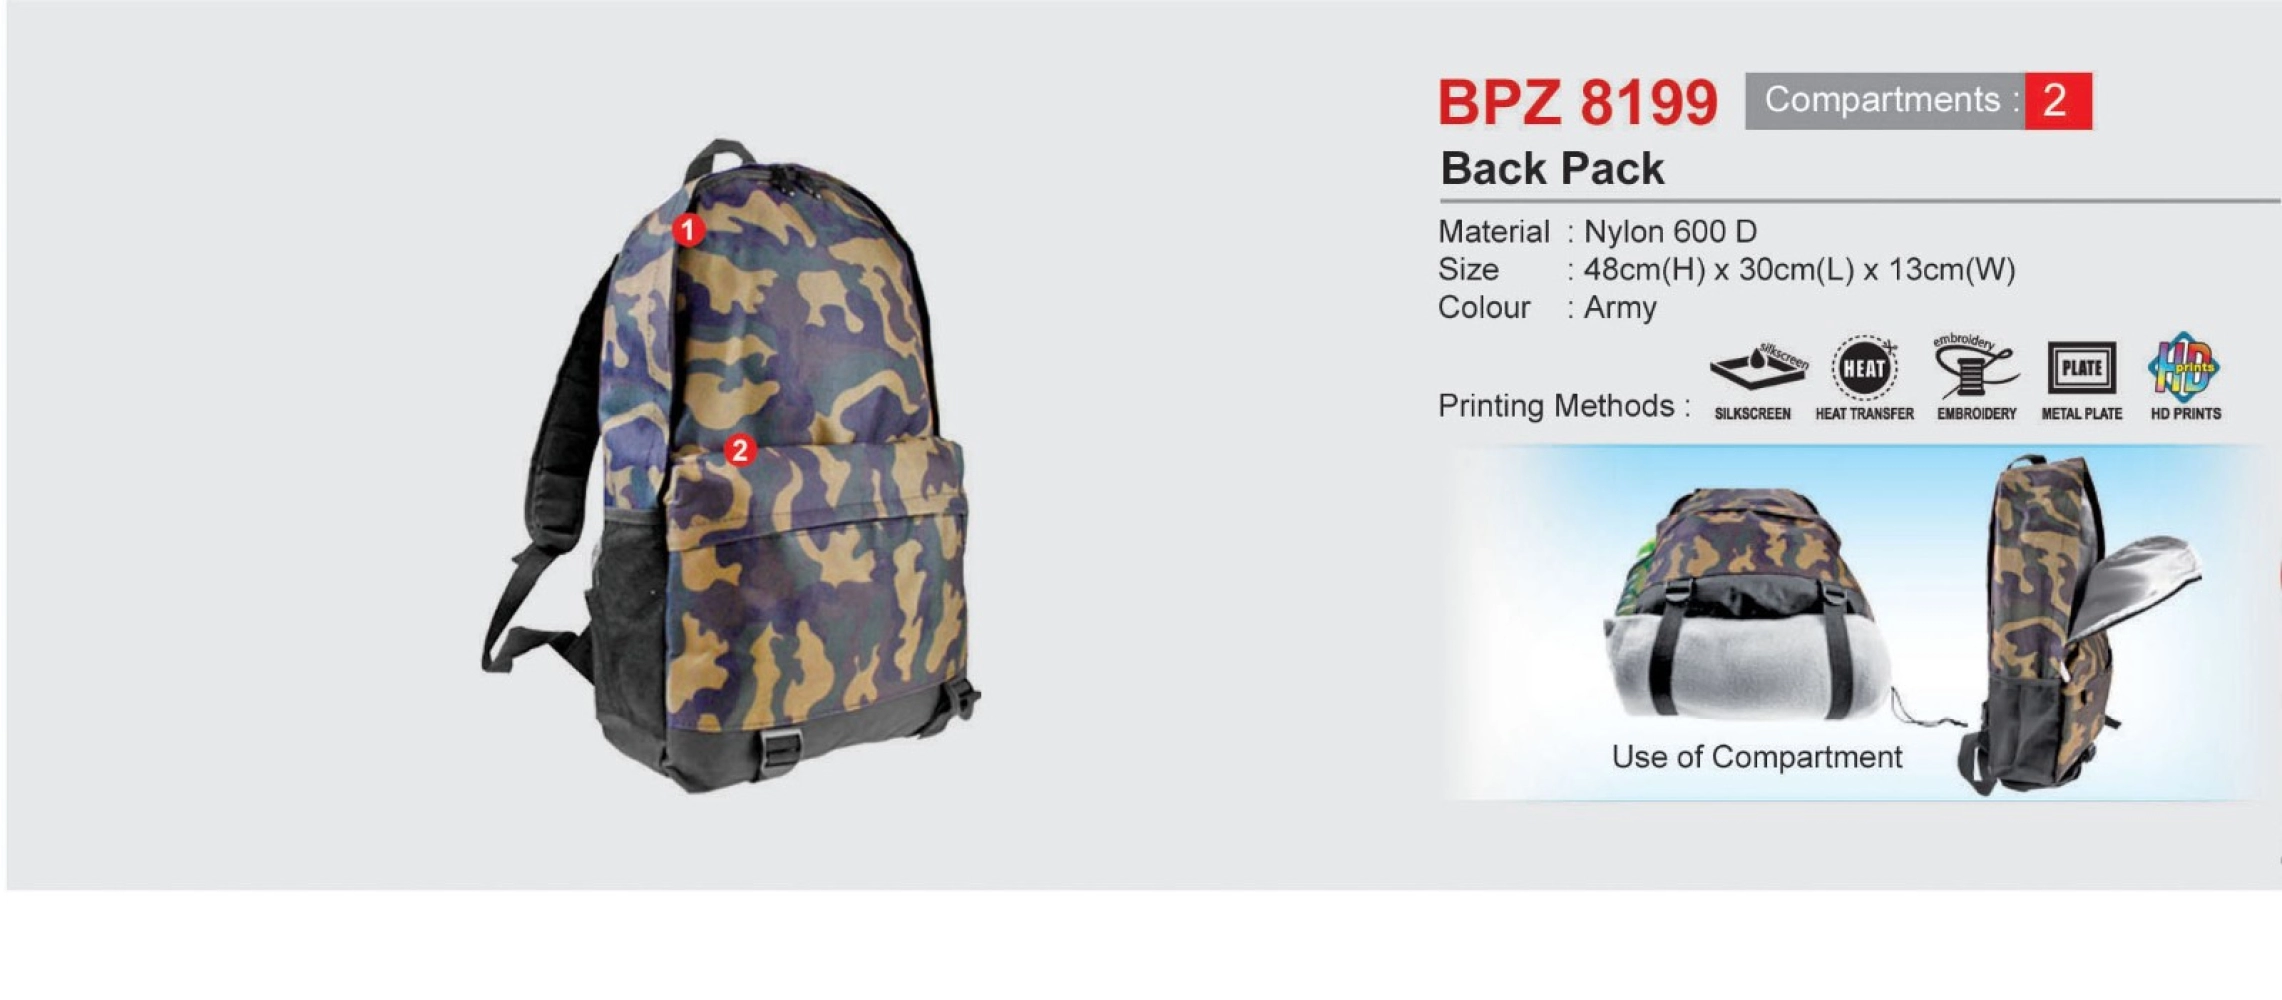 BPZ8199 Back Pack (I)